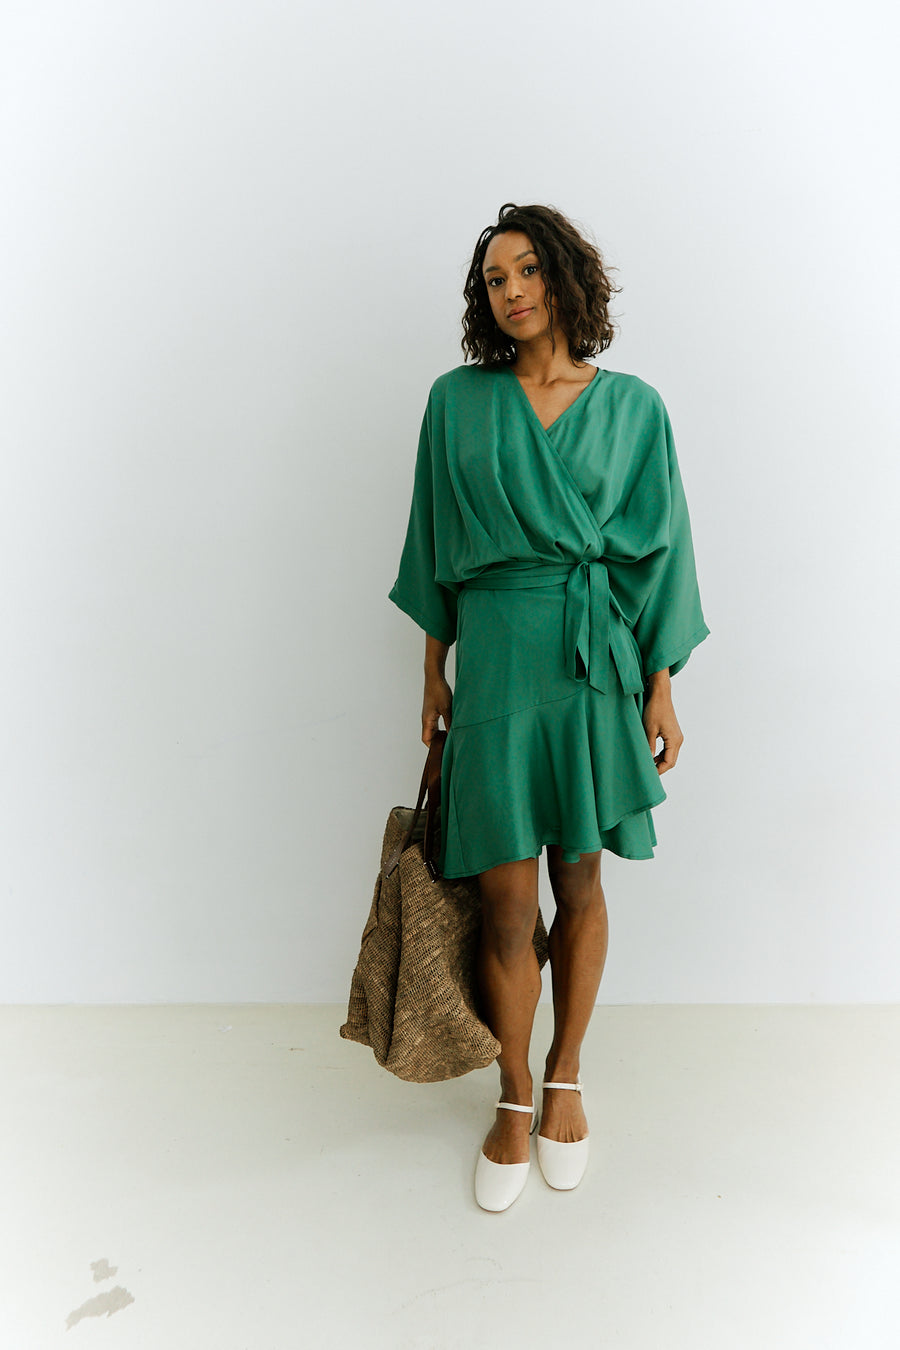 Meij-Dolly Dress (green), wrap dress, ruffle details, kimono sleeves, casual look